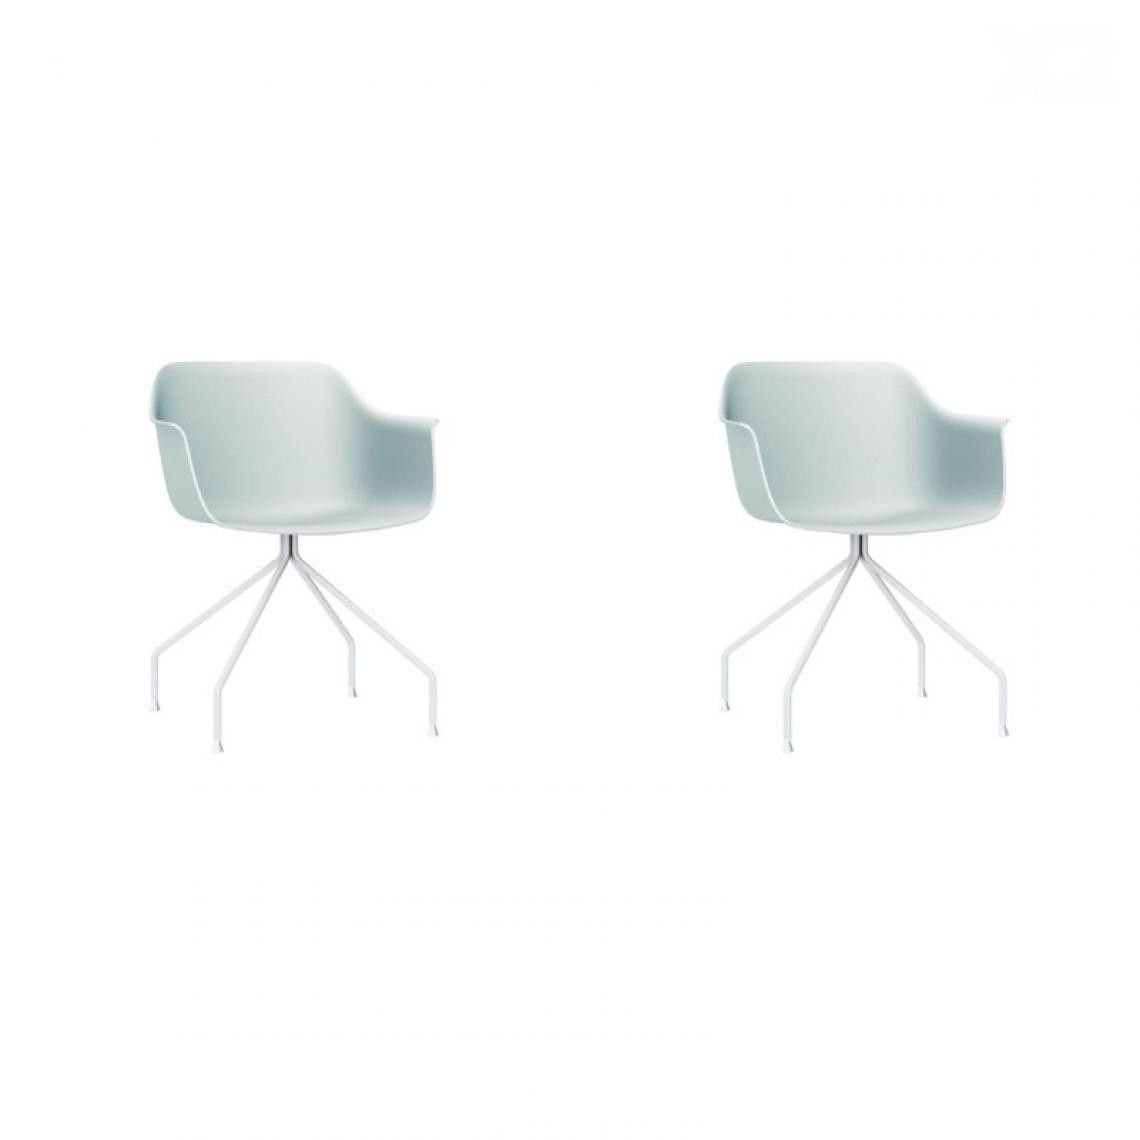 Resol - Set 2 Chaise Araignée - RESOL - BlancFibre de verre, Polypropylène, Acier peint - Chaises